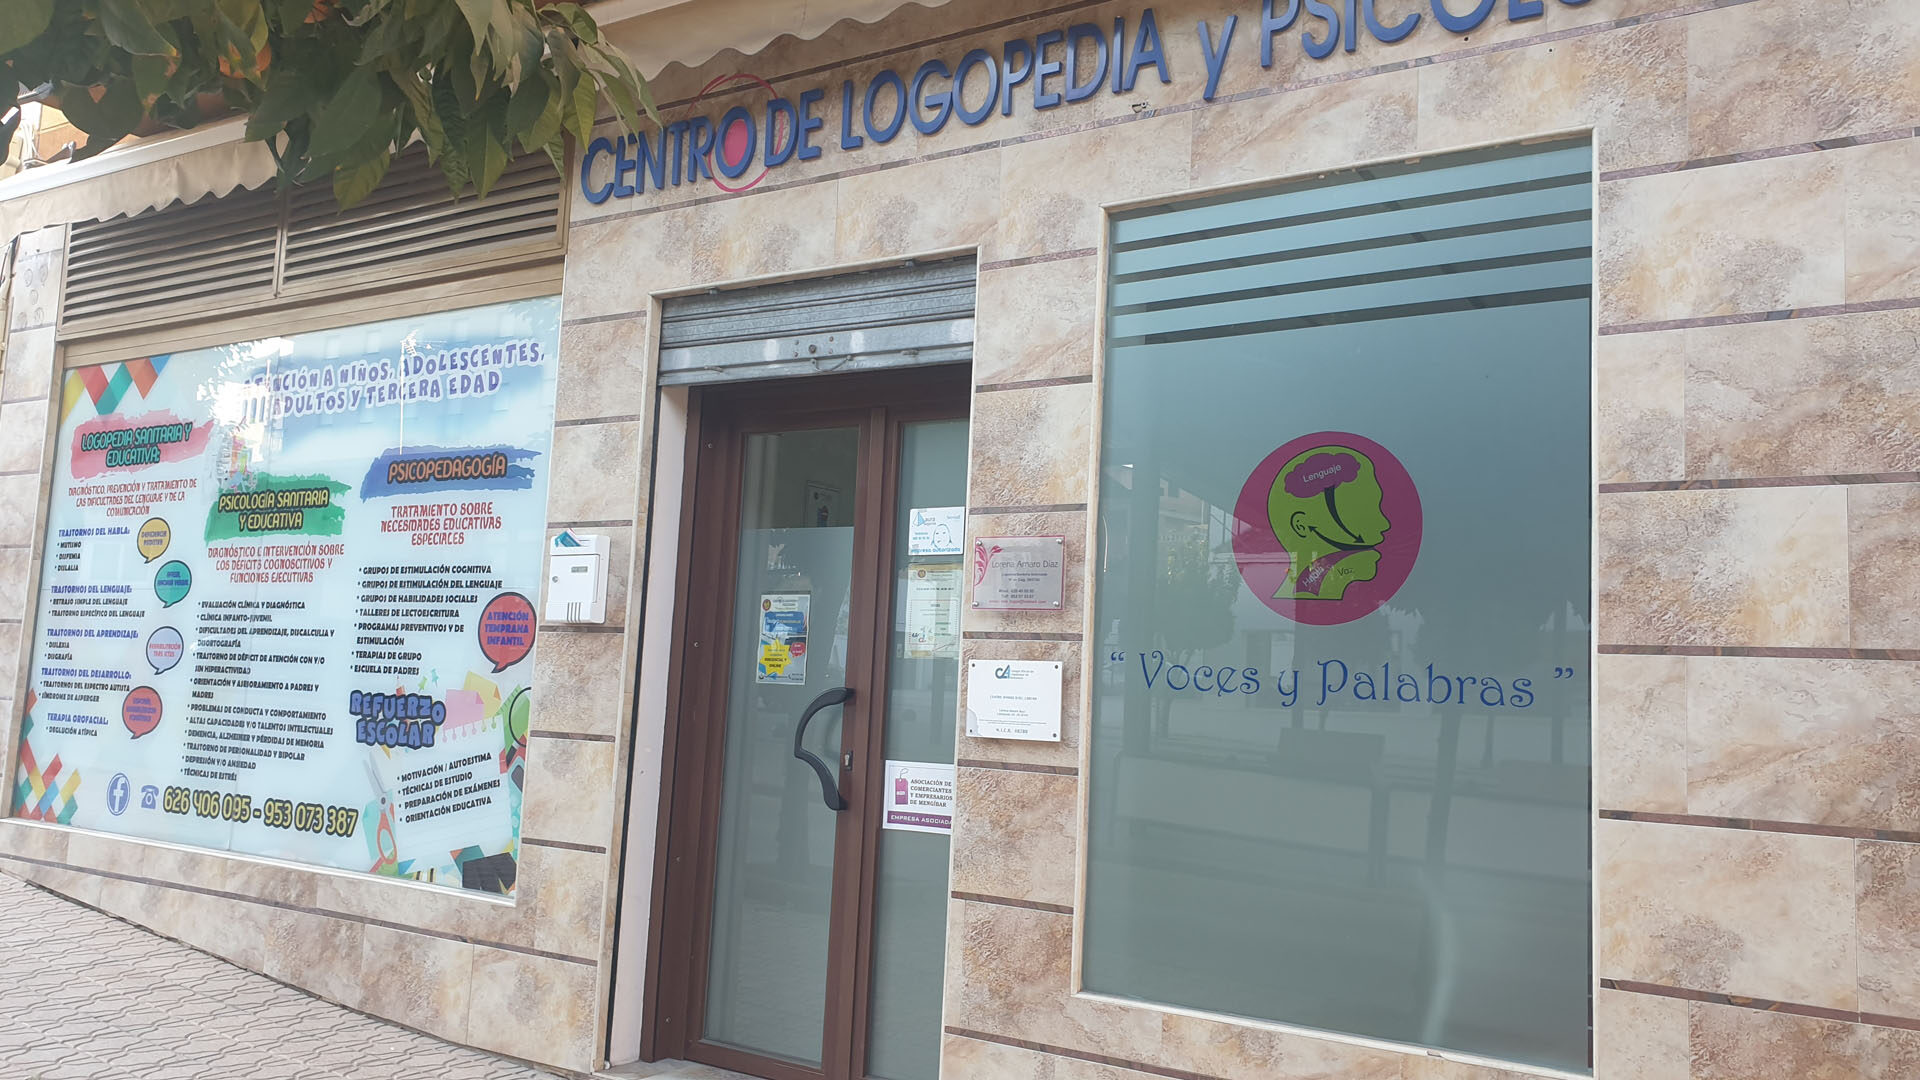 Centro de Logopedia y Psicología “Voces y Palabras”